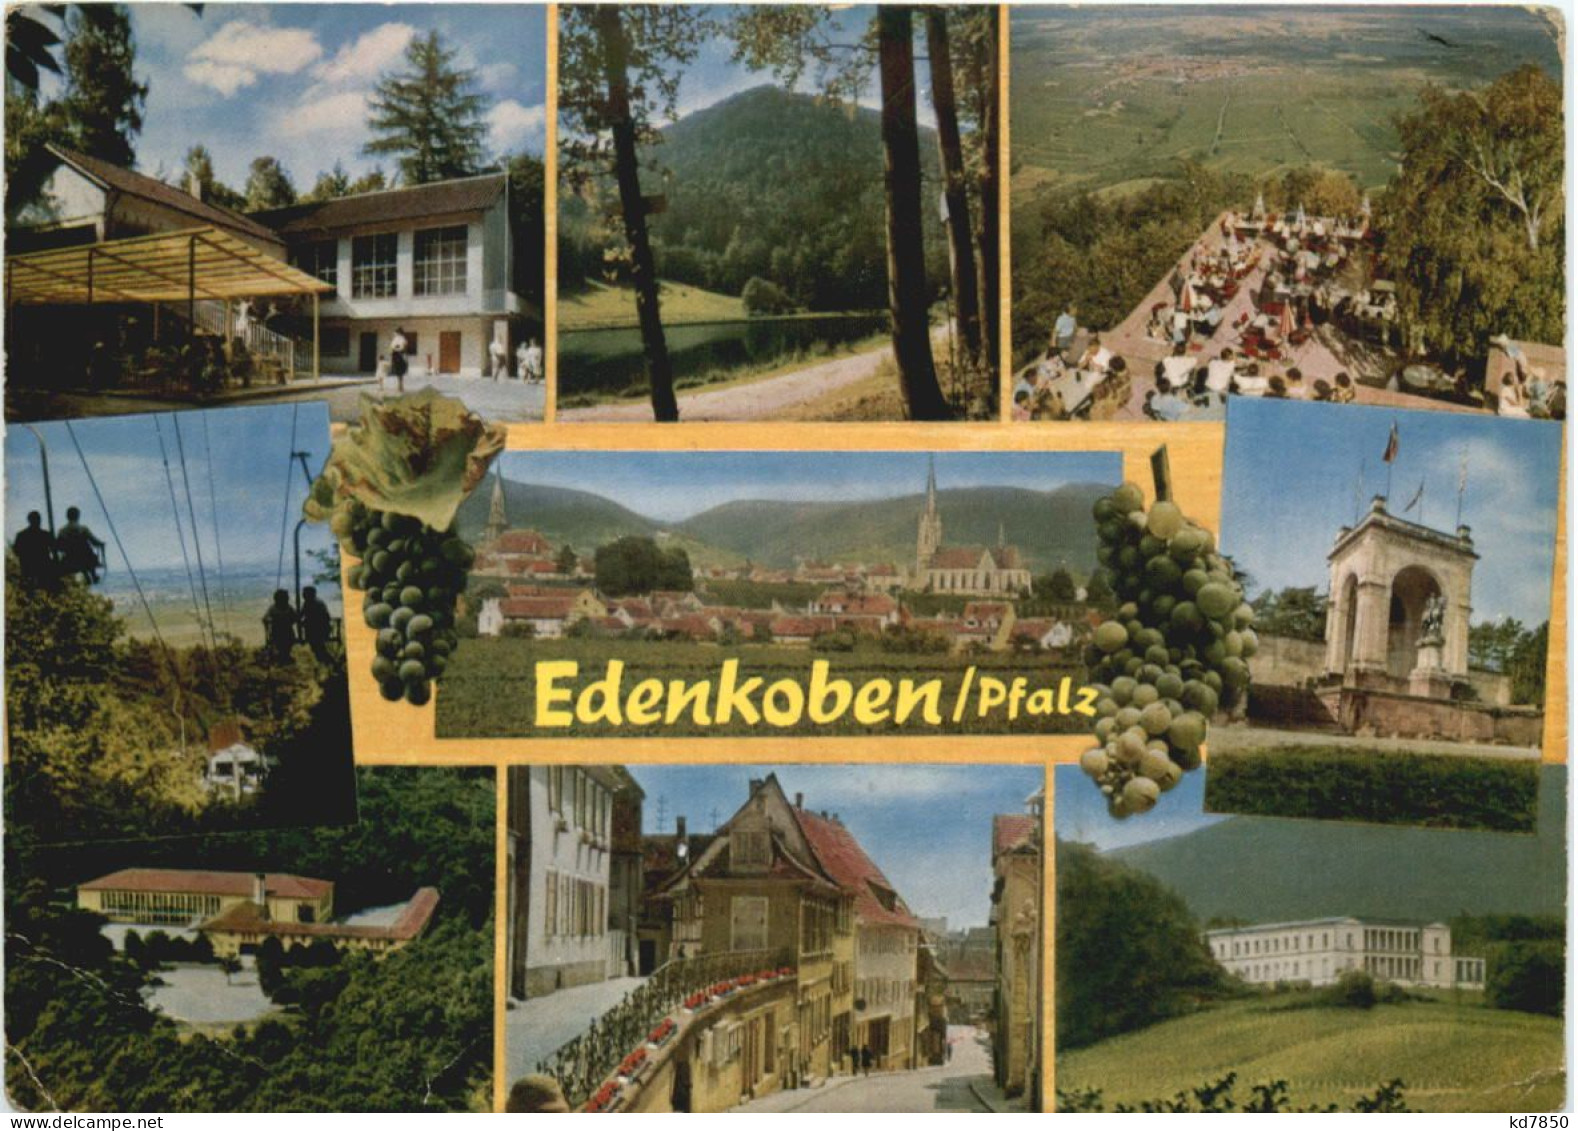 Edenkoben Pfalz - Edenkoben